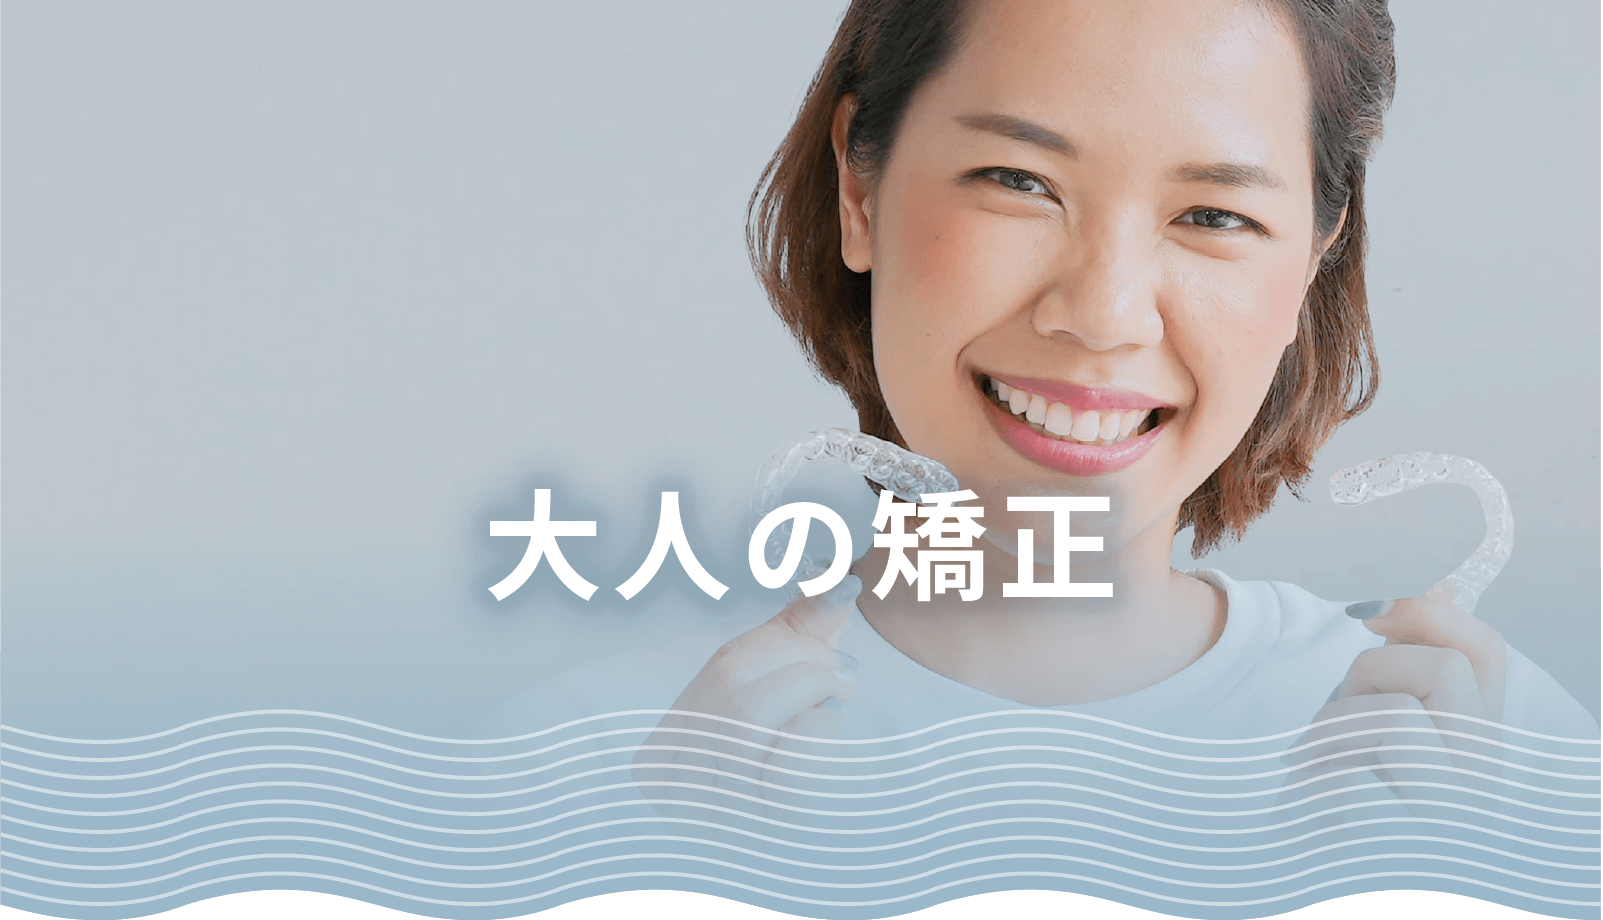 横須賀Sun&Ocean矯正歯科クリニック大人の歯列矯正